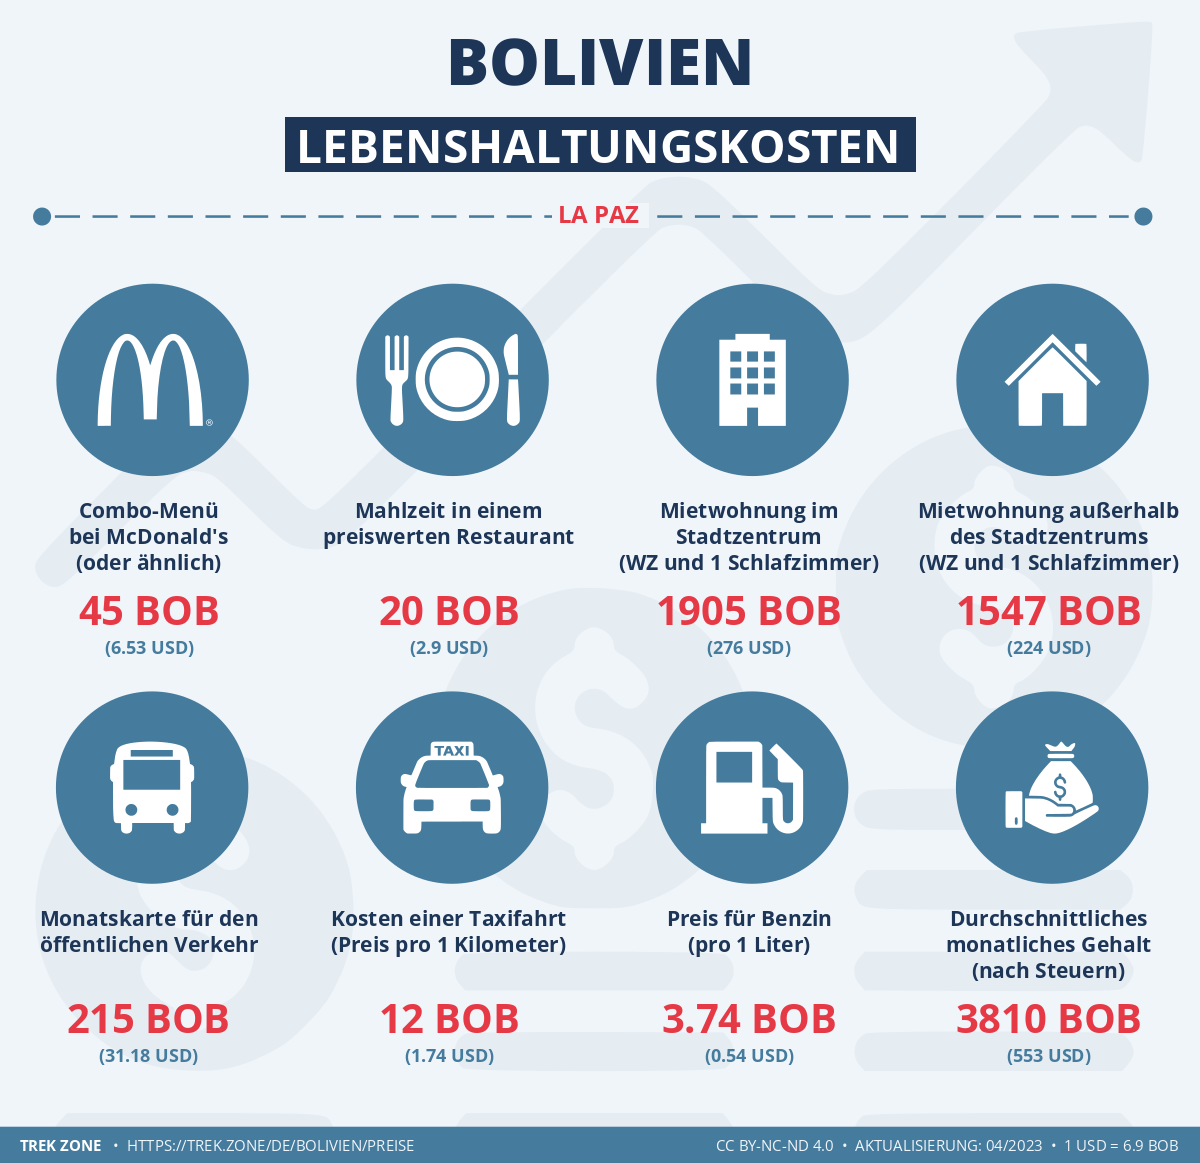 preise und lebenskosten bolivien